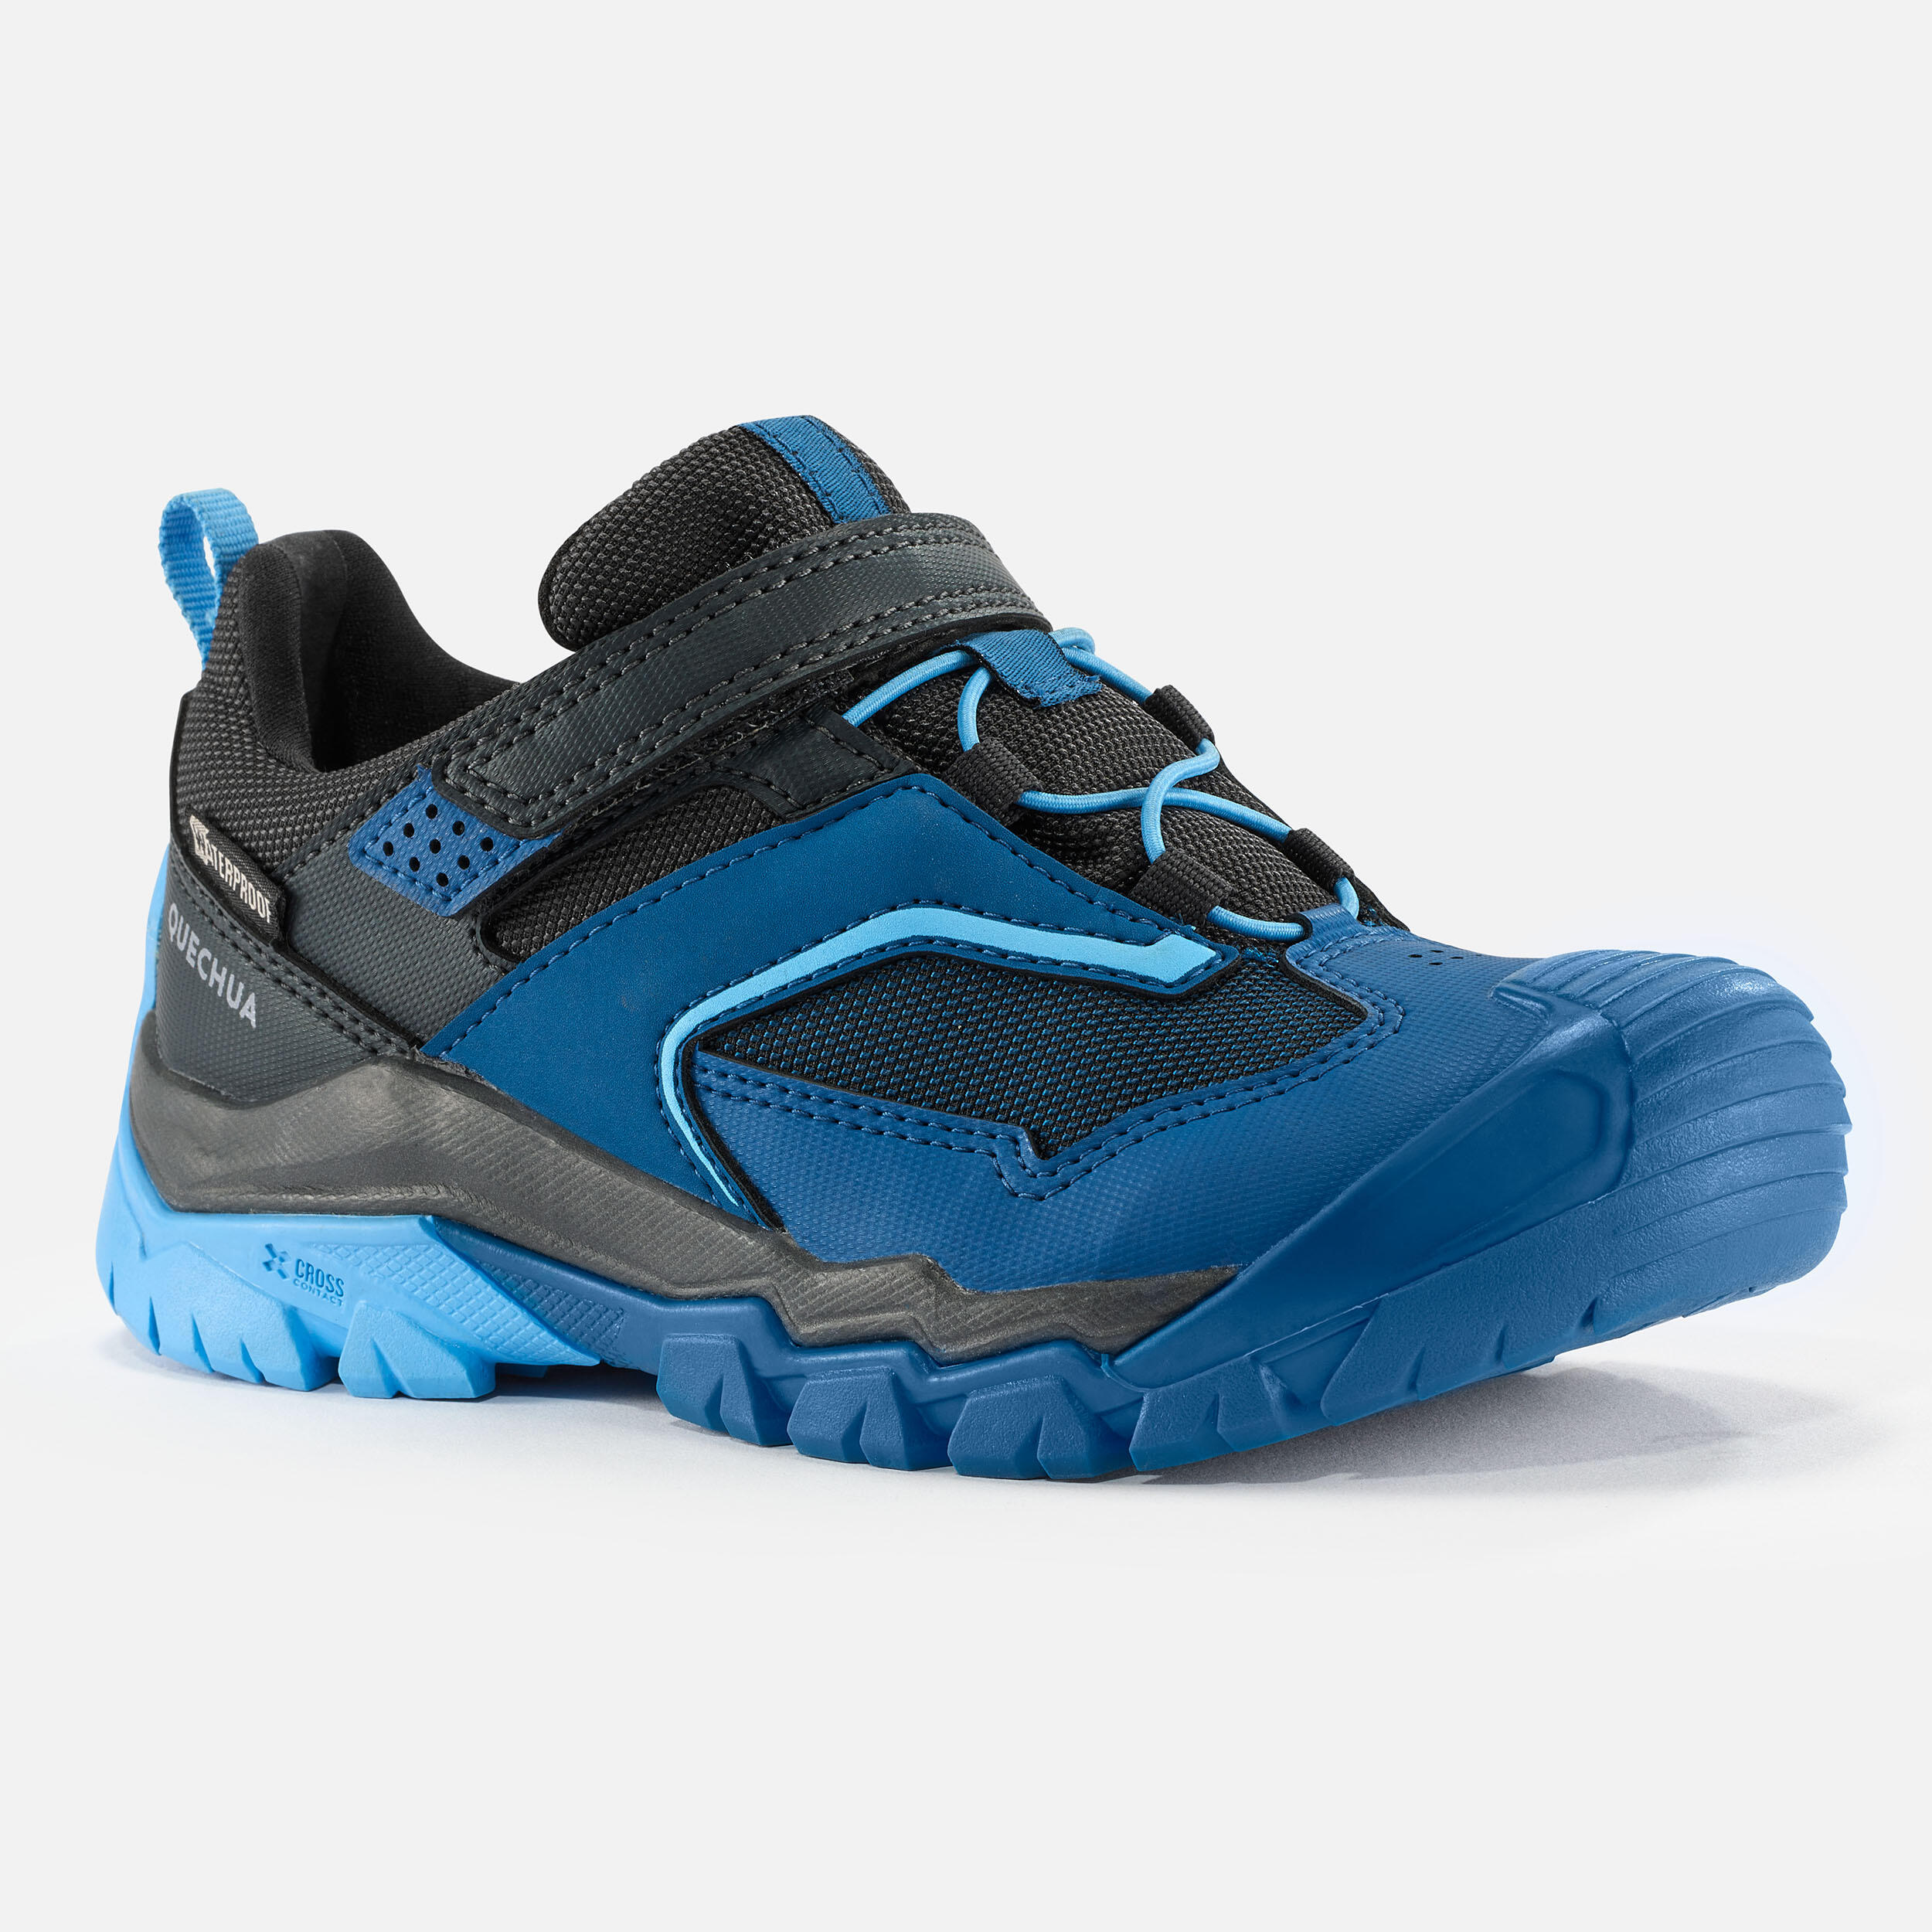 Kids’ Waterproof Hiking Shoes